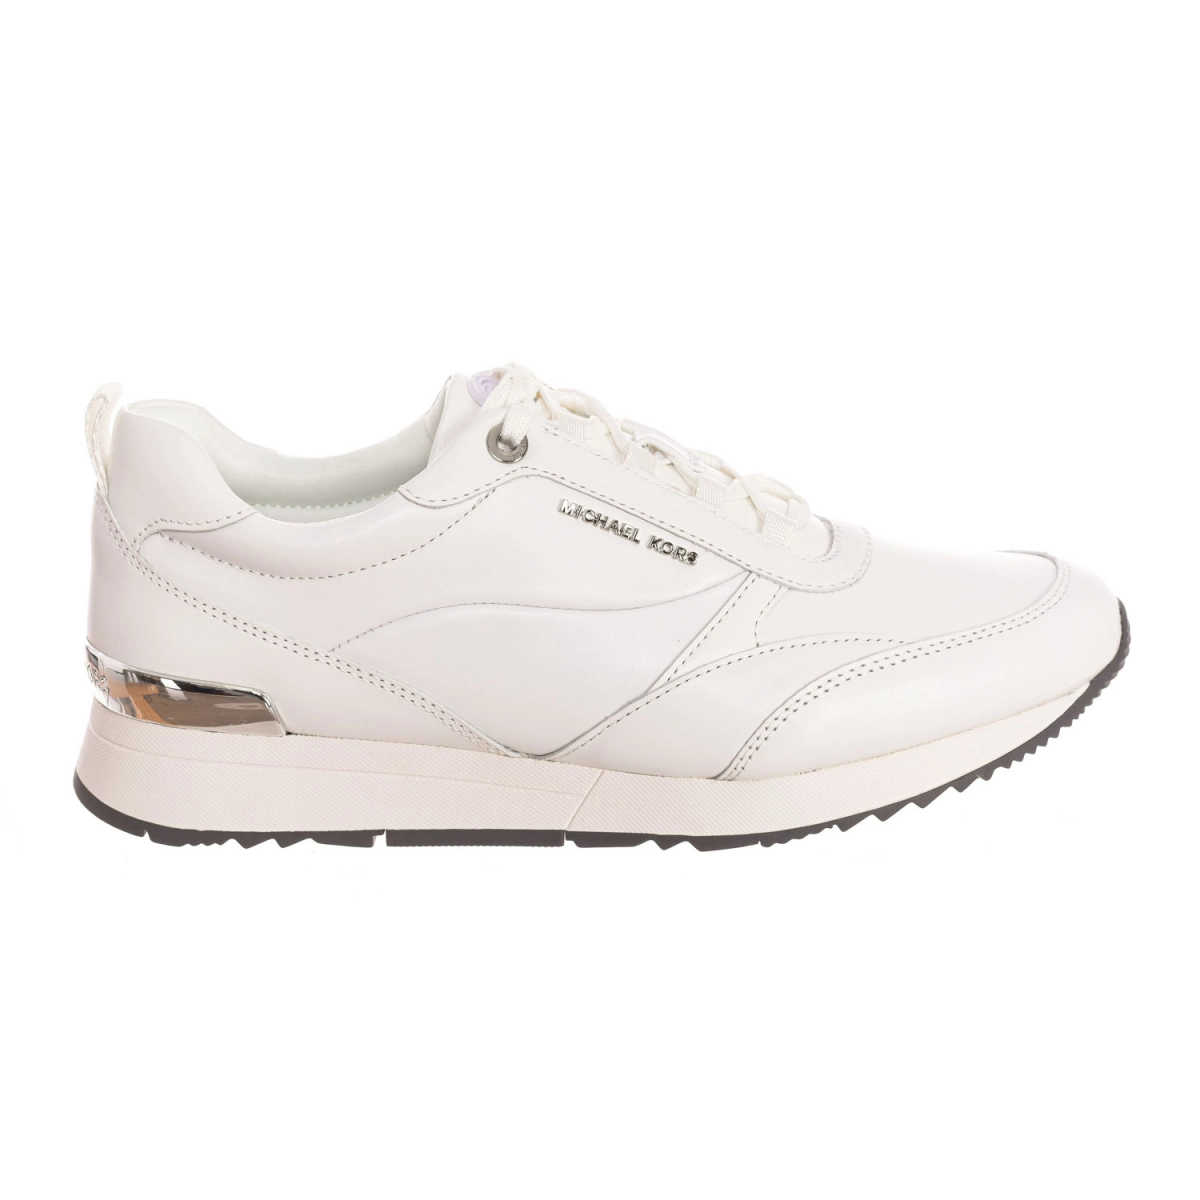 Zapatillas Sneaker Michael Kors 43T2ALFS3L mujer Talla: 41 Color: Blanco 43T2ALFS3L-OPTIC WHITE.41